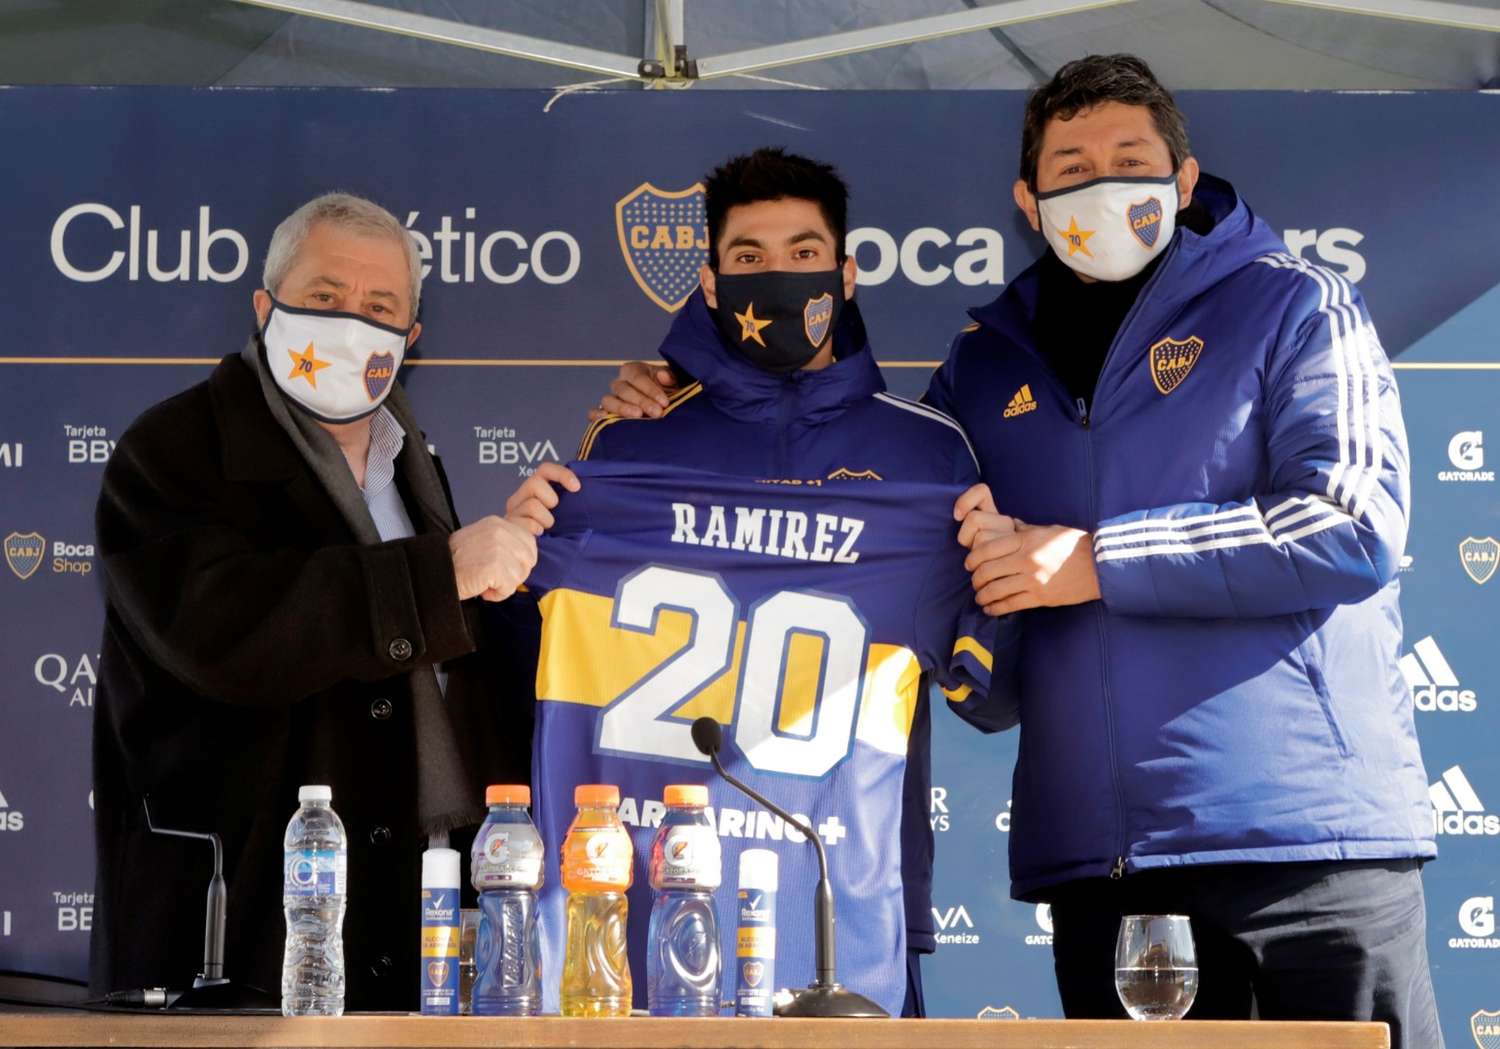 "A cualquier jugador le gustaría estar en Boca", dijo Juan Ramírez